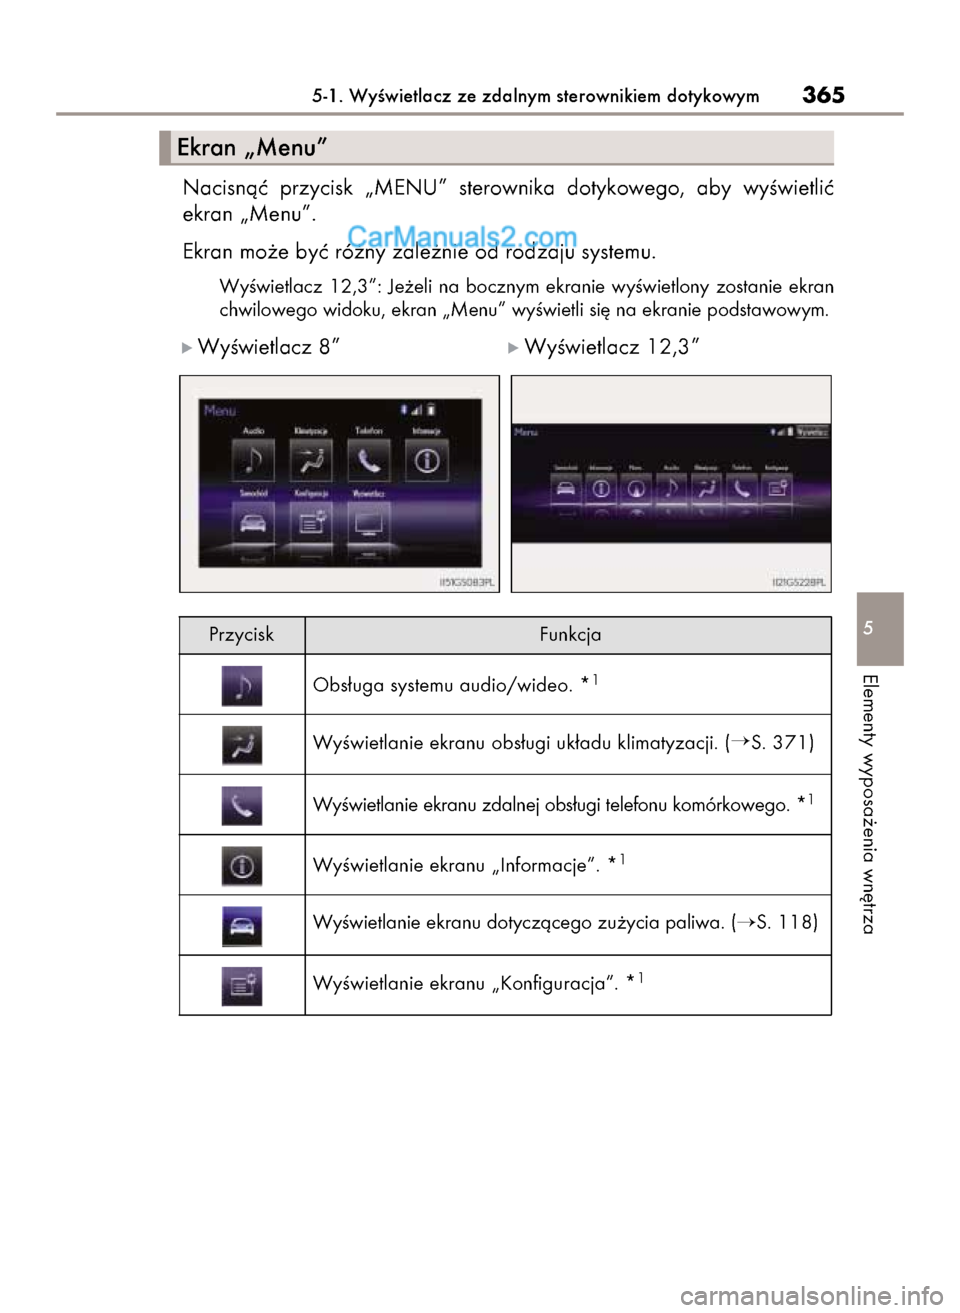 Lexus GS250 2014  Instrukcja Obsługi (in Polish) Nacisnàç  przycisk  „MENU”  sterownika  dotykowego,  aby  wyÊwietliç
ekran „Menu”.
Ekran mo˝e byç ró˝ny zale˝nie od rodzaju systemu.
WyÊwietlacz  12,3”:  Je˝eli  na  bocznym  ekra